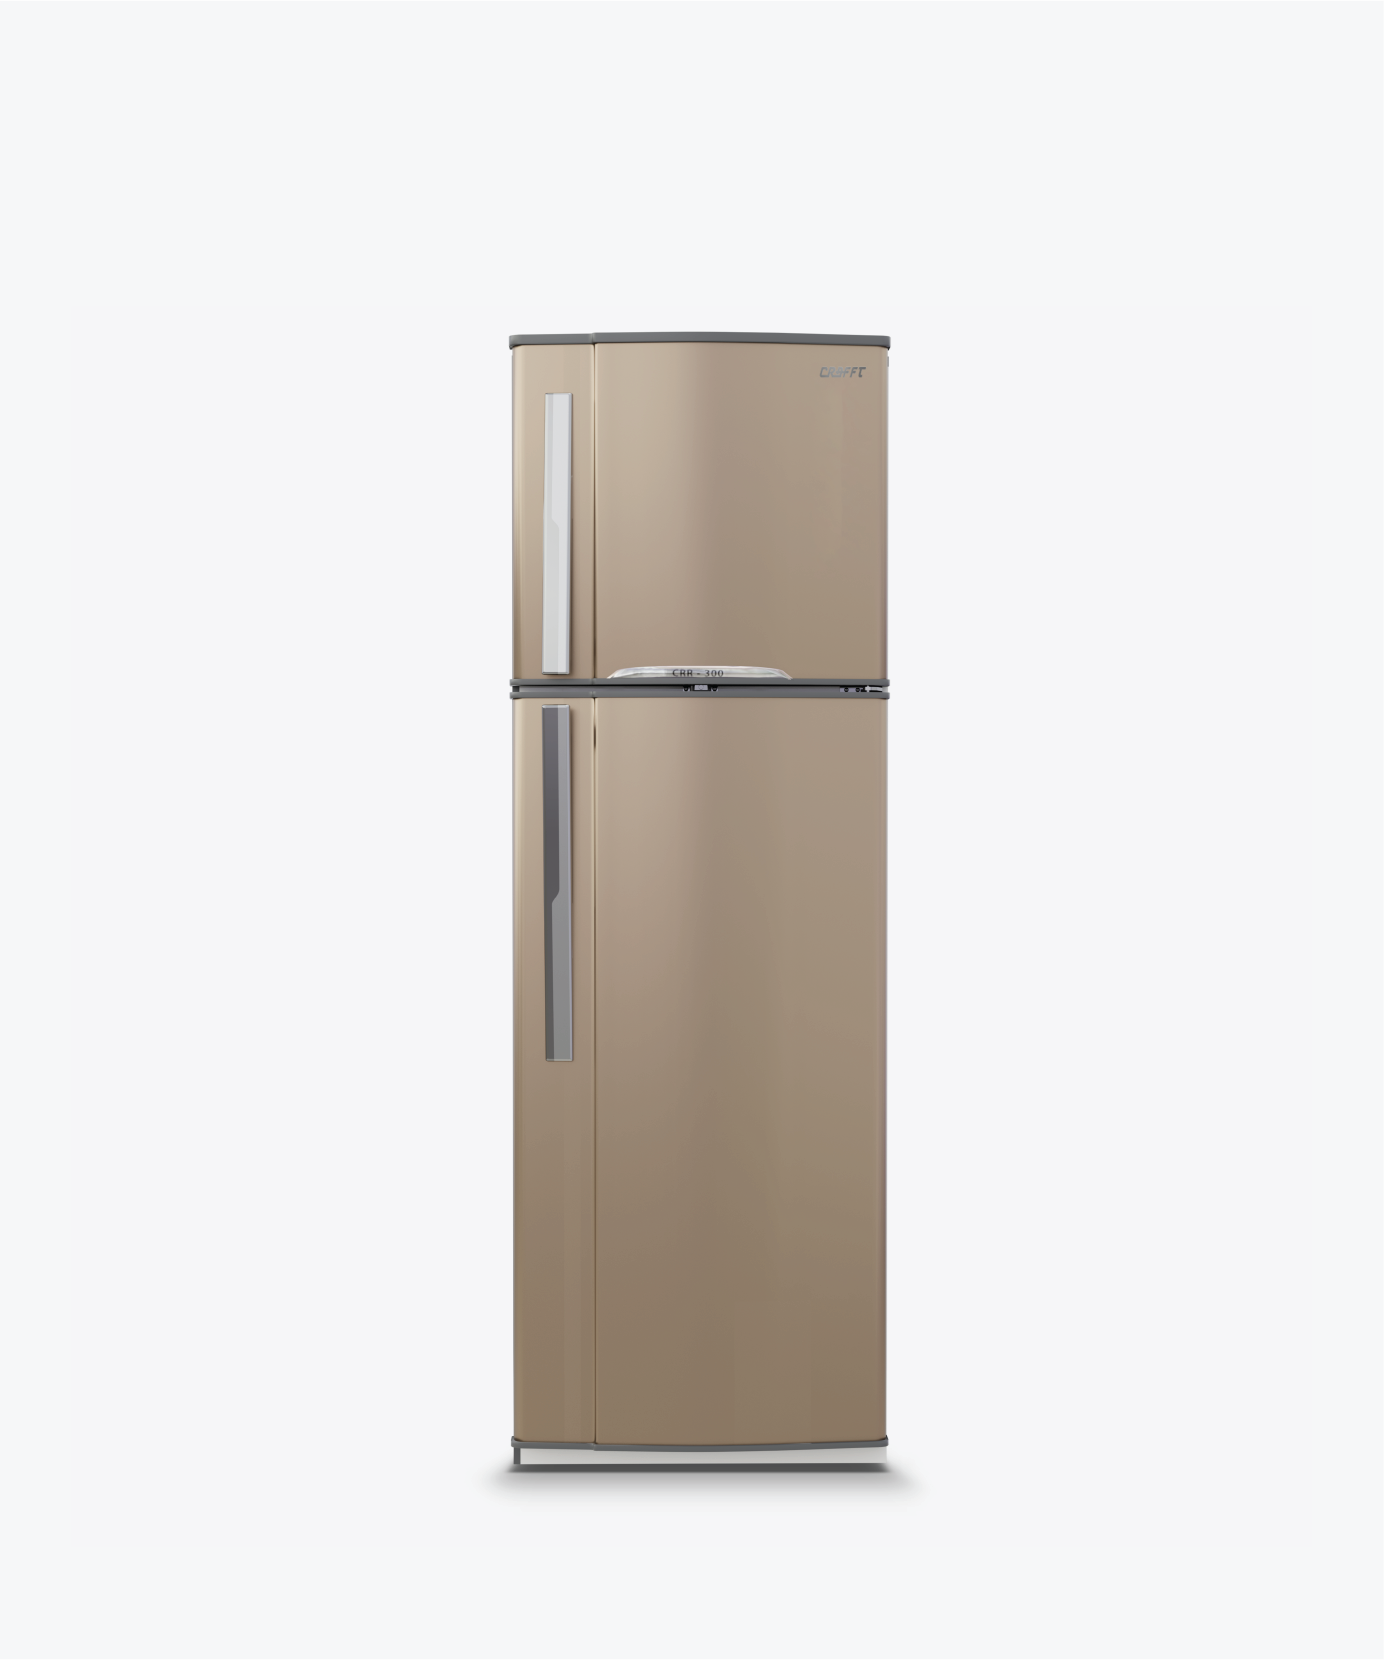 14 Feet Golden Refrigerator||Refrigerators 